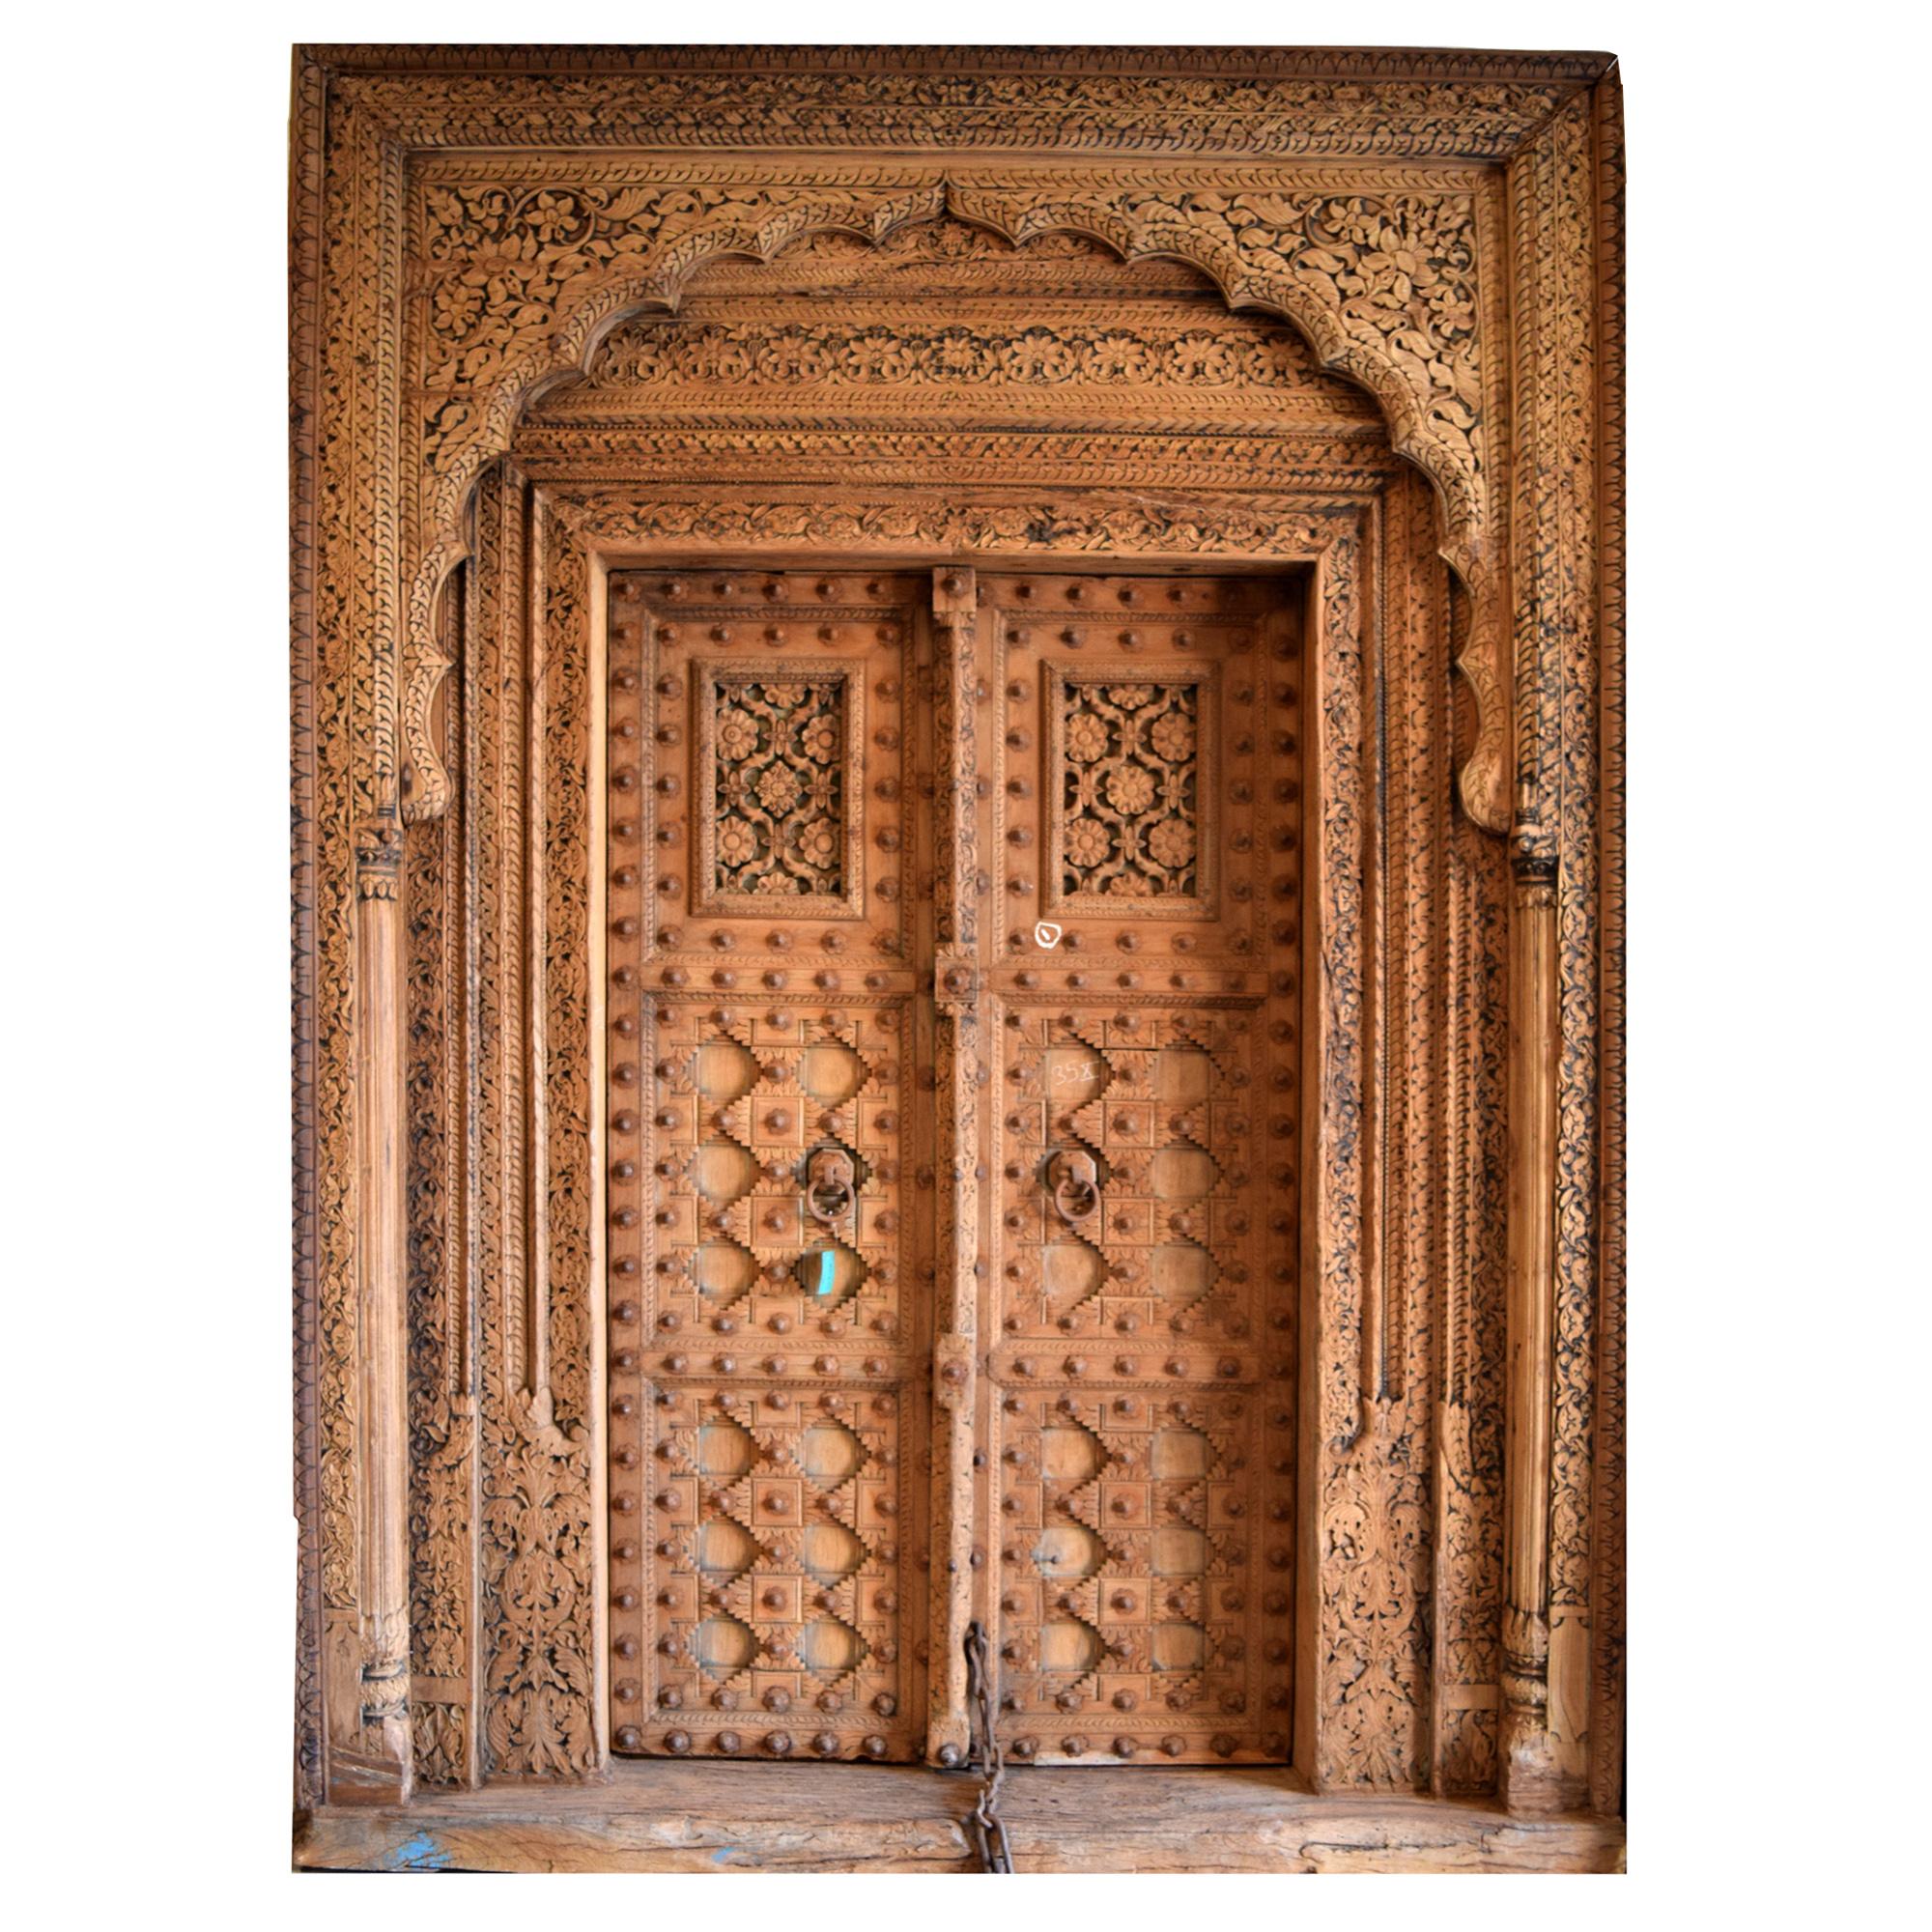 Antikes Eingangsportal aus Indien #indisch ©Guru-Shop